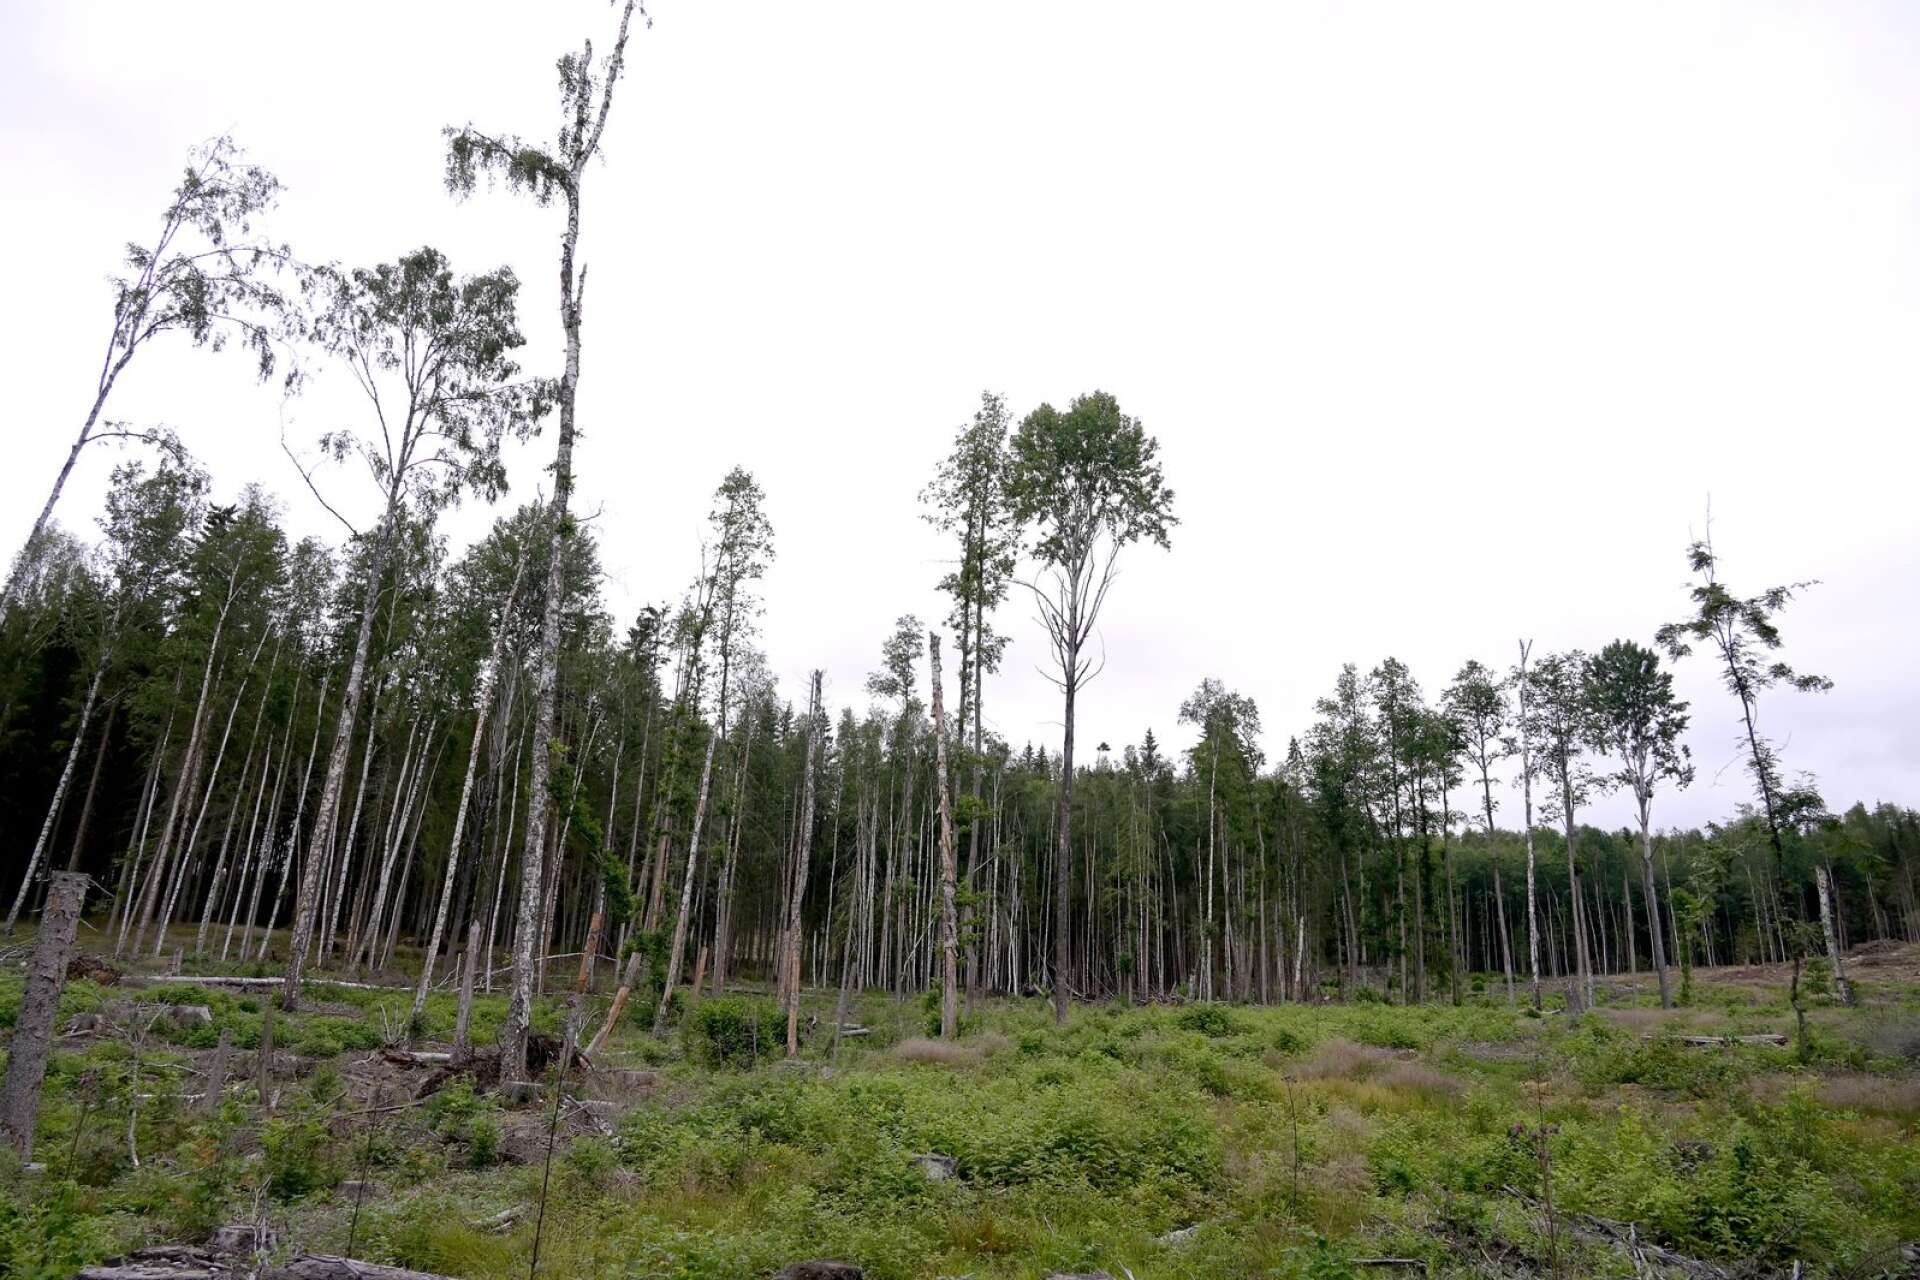 Sverige var ett av de mest kritiska länderna till EU:s skogsstrategi och har aktivt motarbetat en lång rad av EU:s förslag för stärkt miljöhänsyn i skogen, skriver Johanna Sandahl och Karin Lexén.